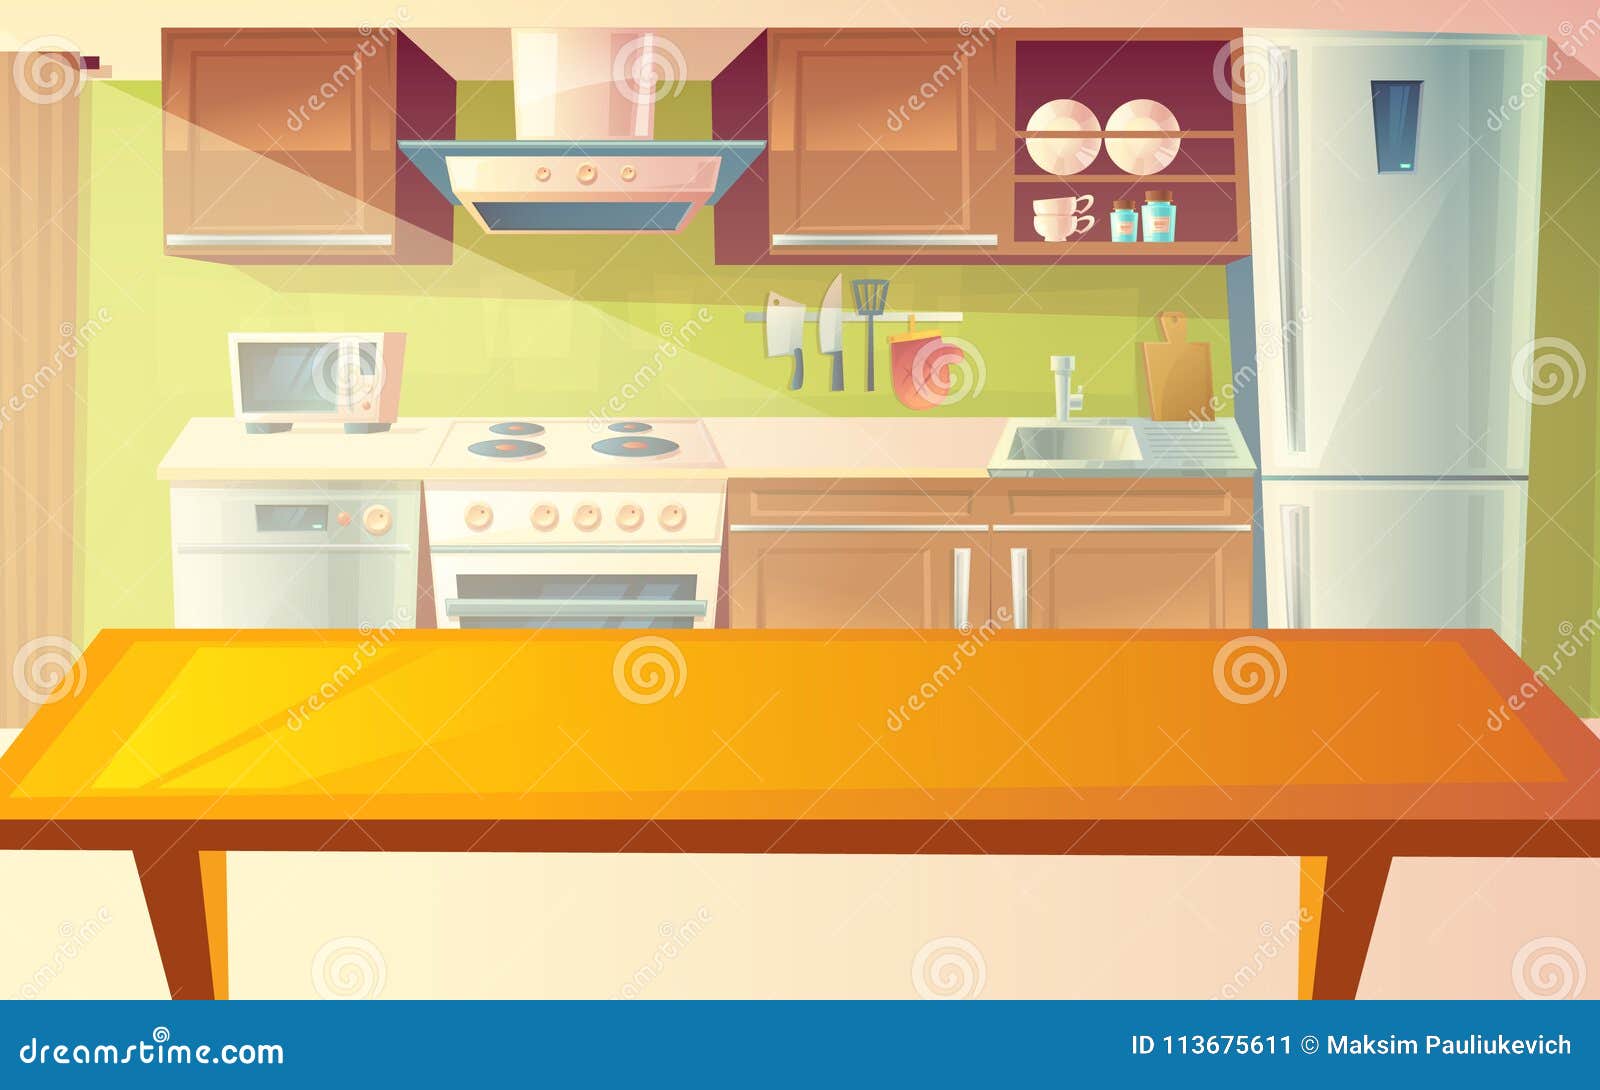 Cartoon Kitchen Stock Illustrations – 166,870 Cartoon Kitchen Stock  Illustrations, Vectors & Clipart - Dreamstime